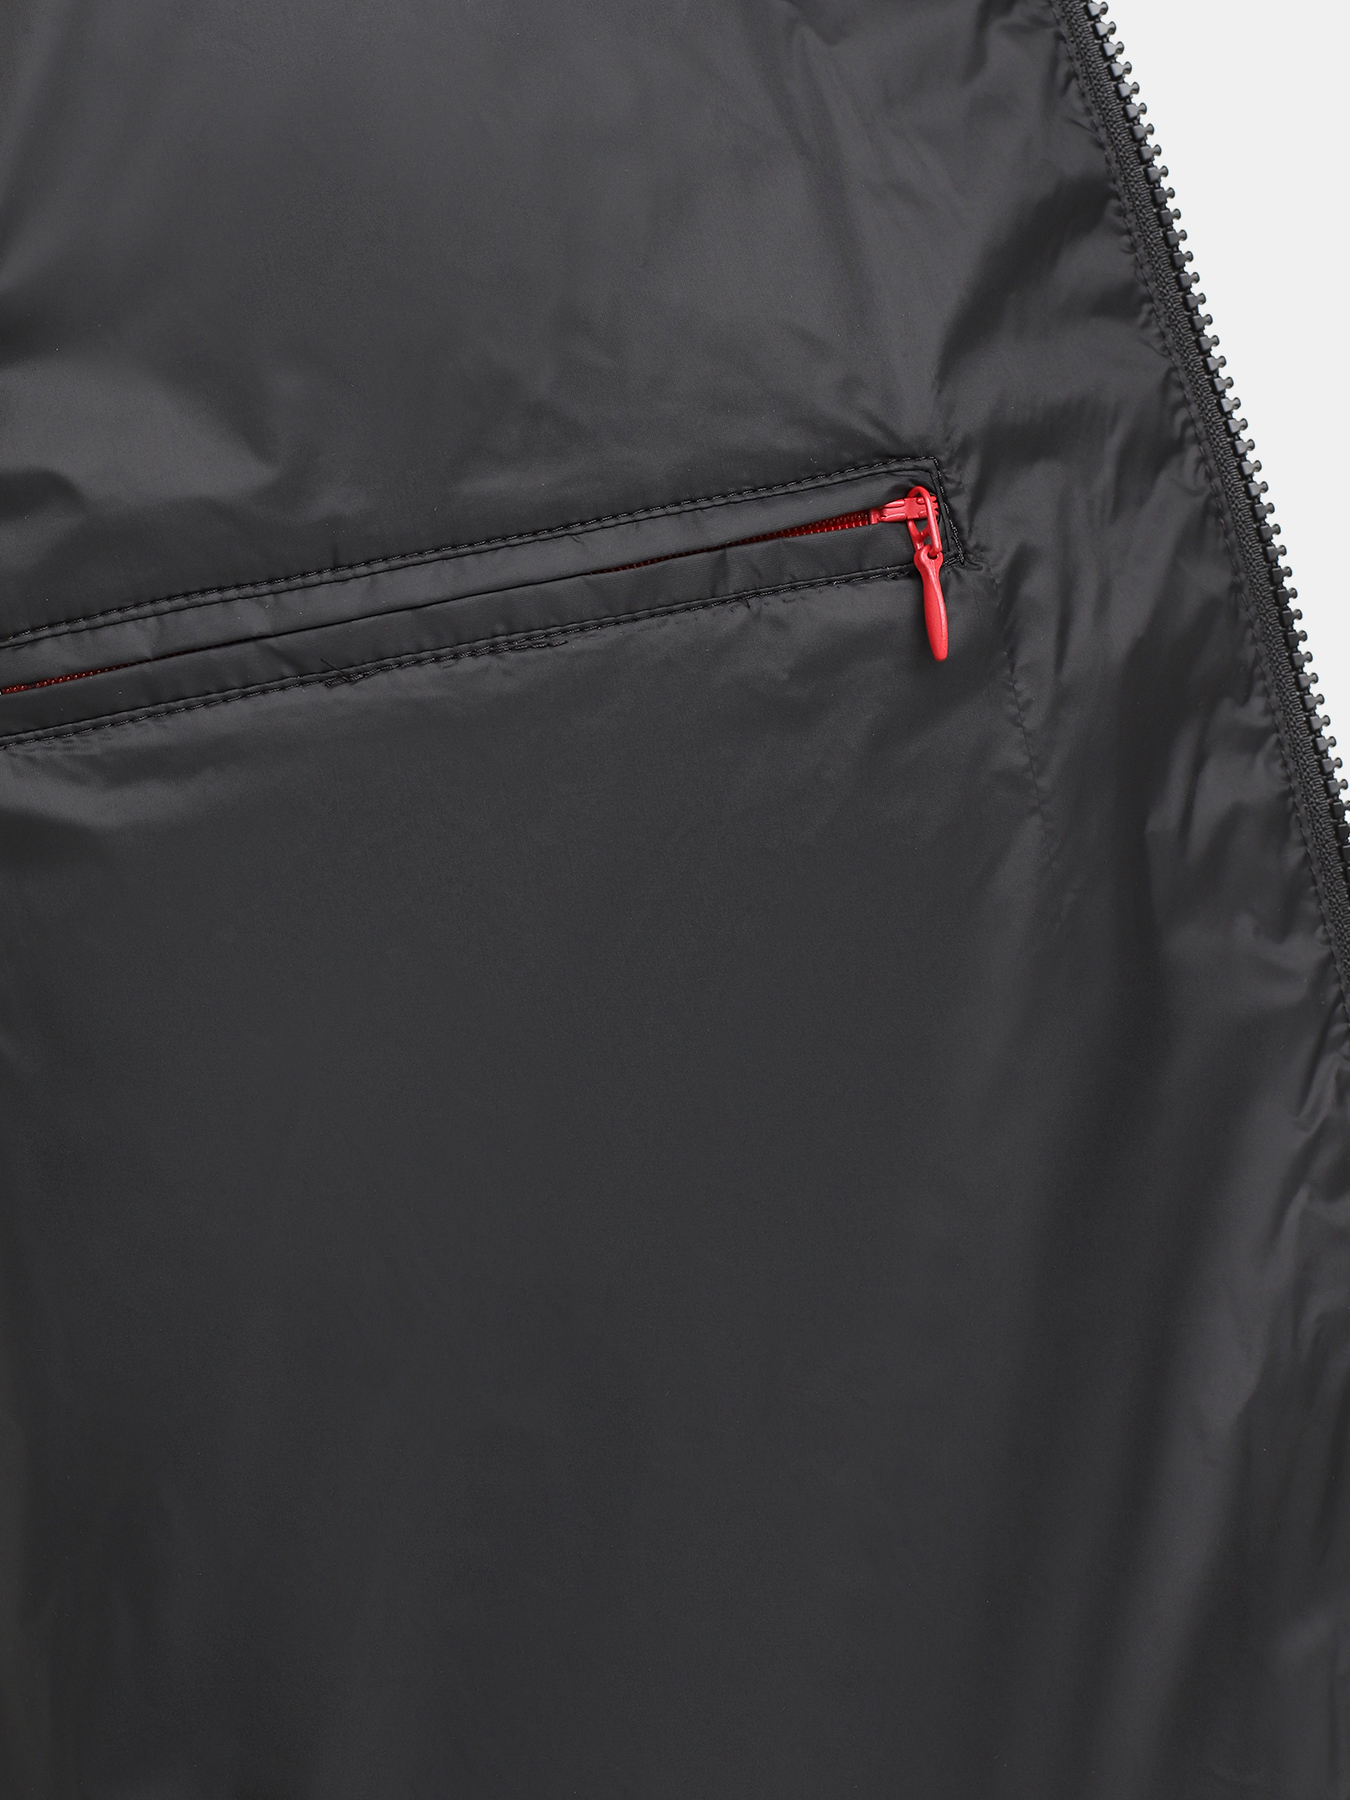 Удлиненная куртка Mati HUGO 426043-043, цвет черный, размер 48-50 - фото 3